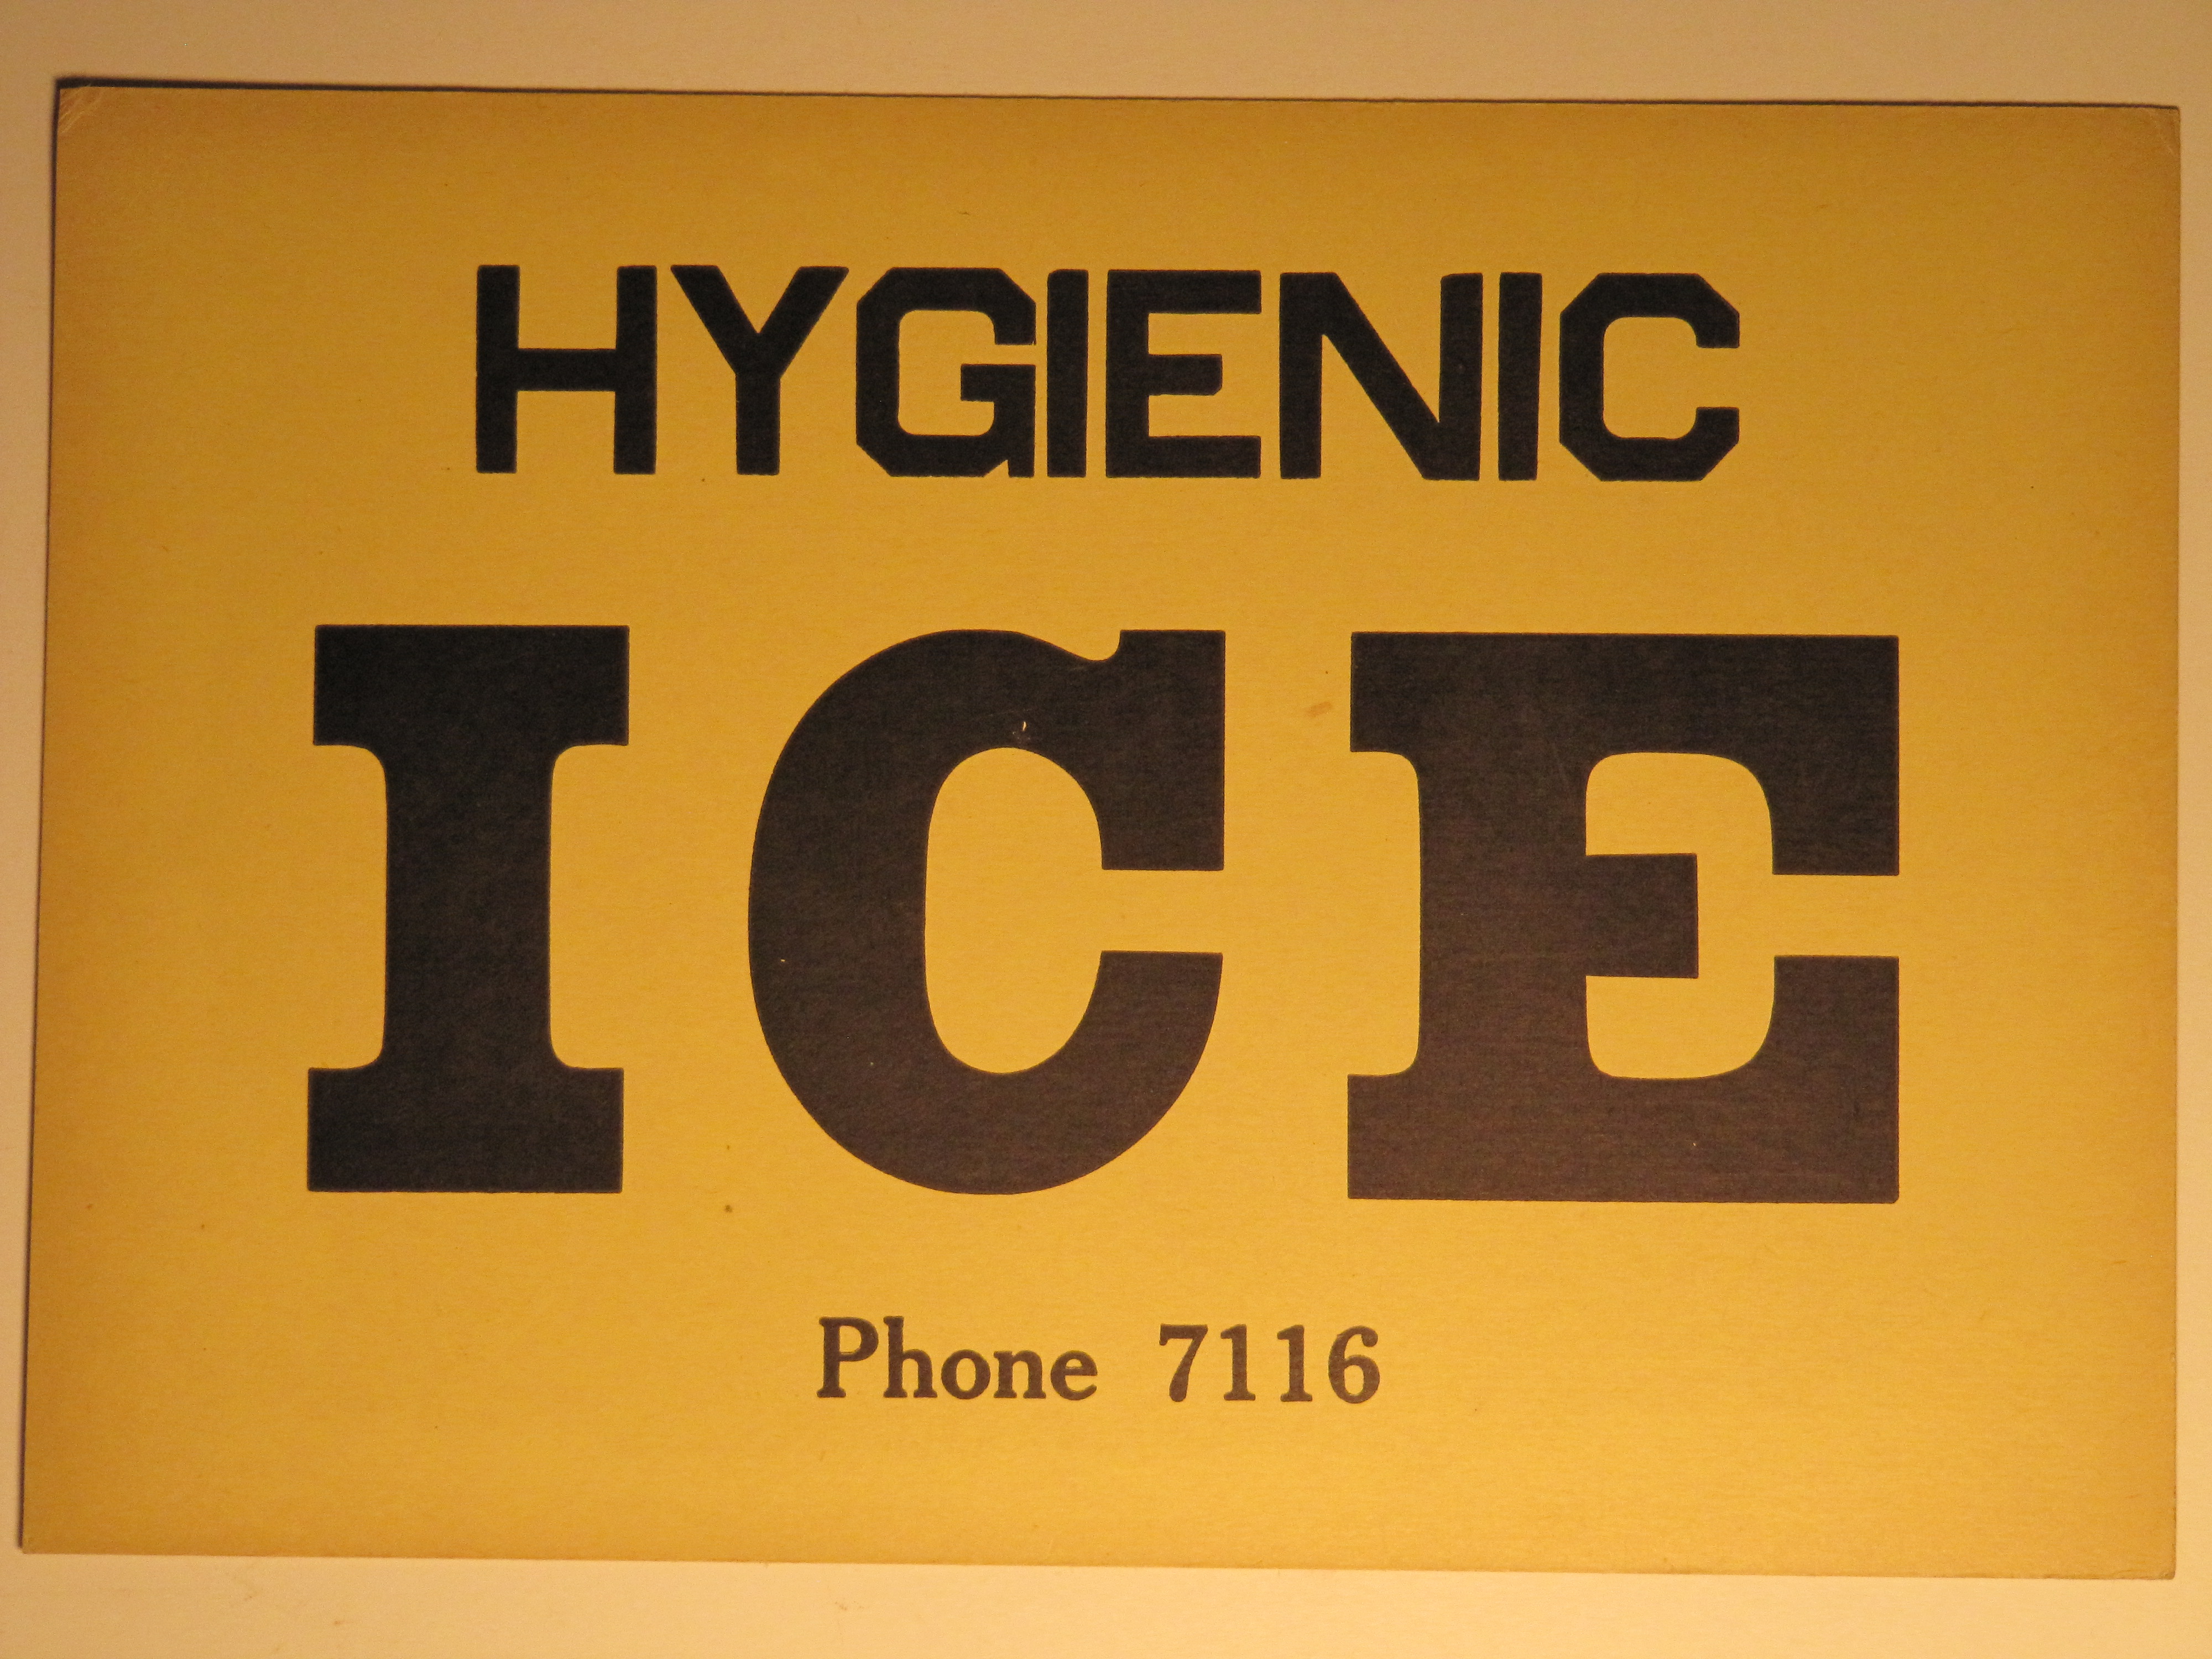 Hygenic Ice yellow